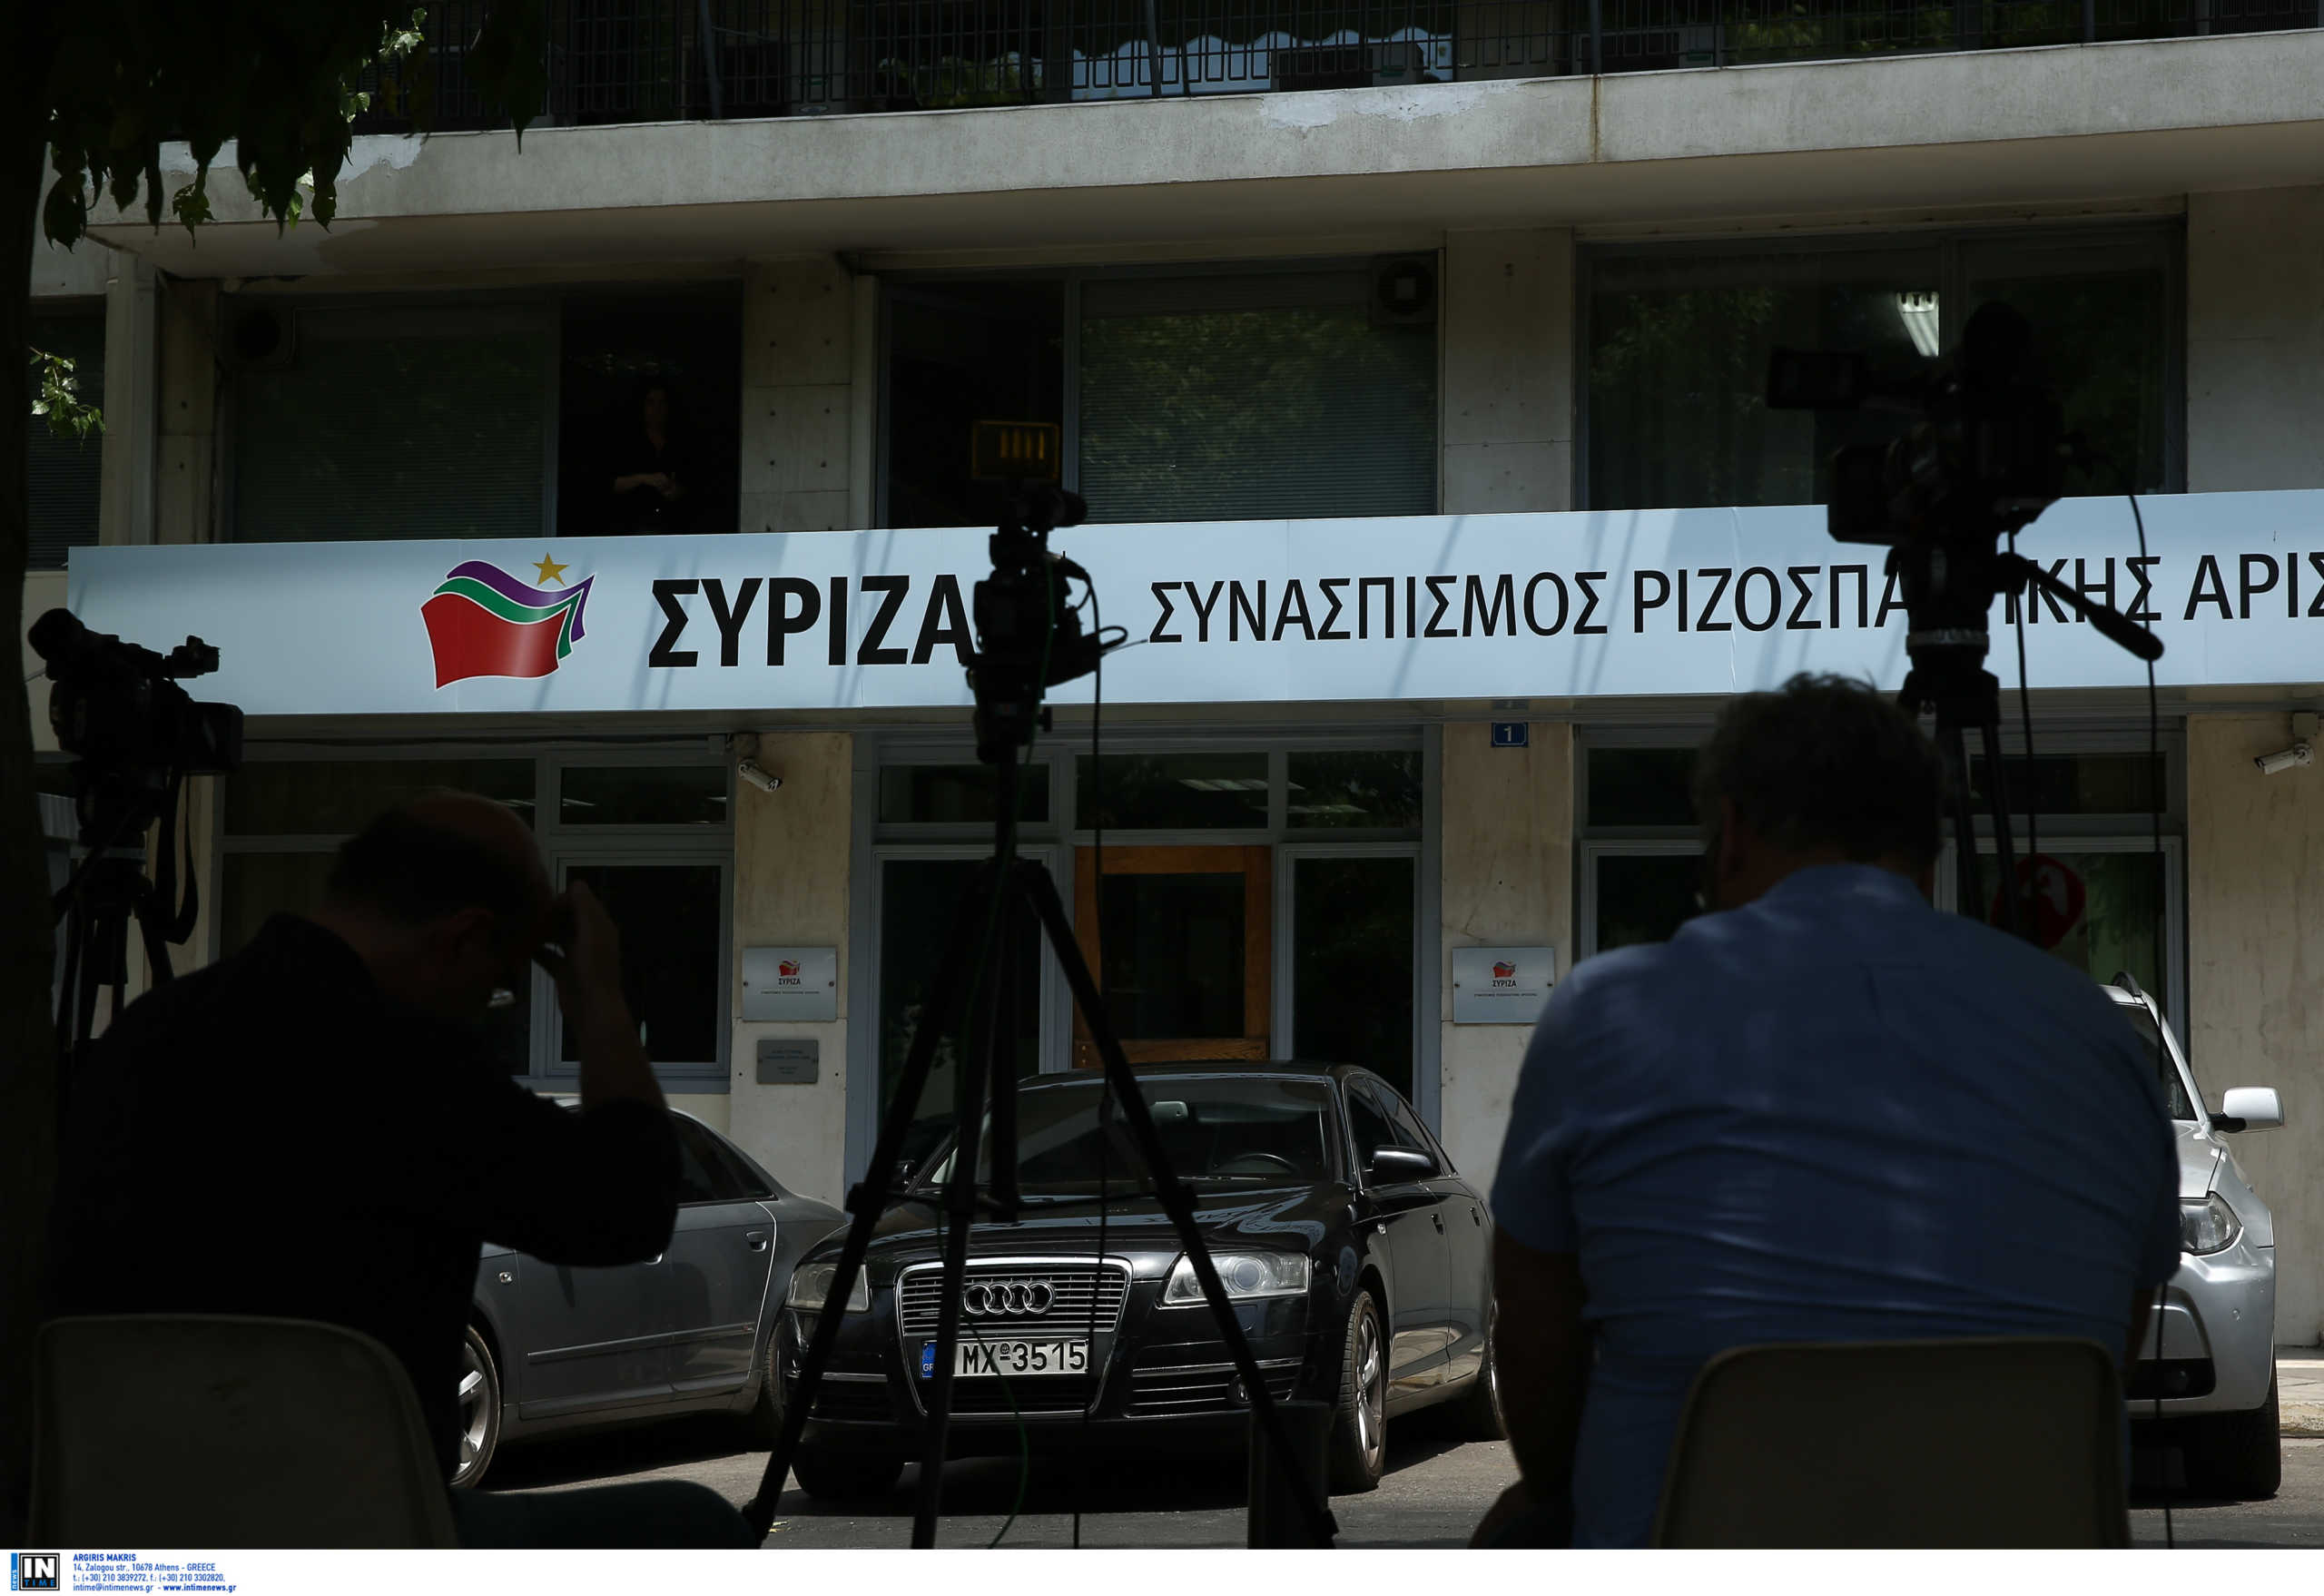 ΣΥΡΙΖΑ: Ο κ. Μητσοτάκης δεν έχει απαντήσει για τις αποκαλύψεις σχετικά με την ΕΥΠ